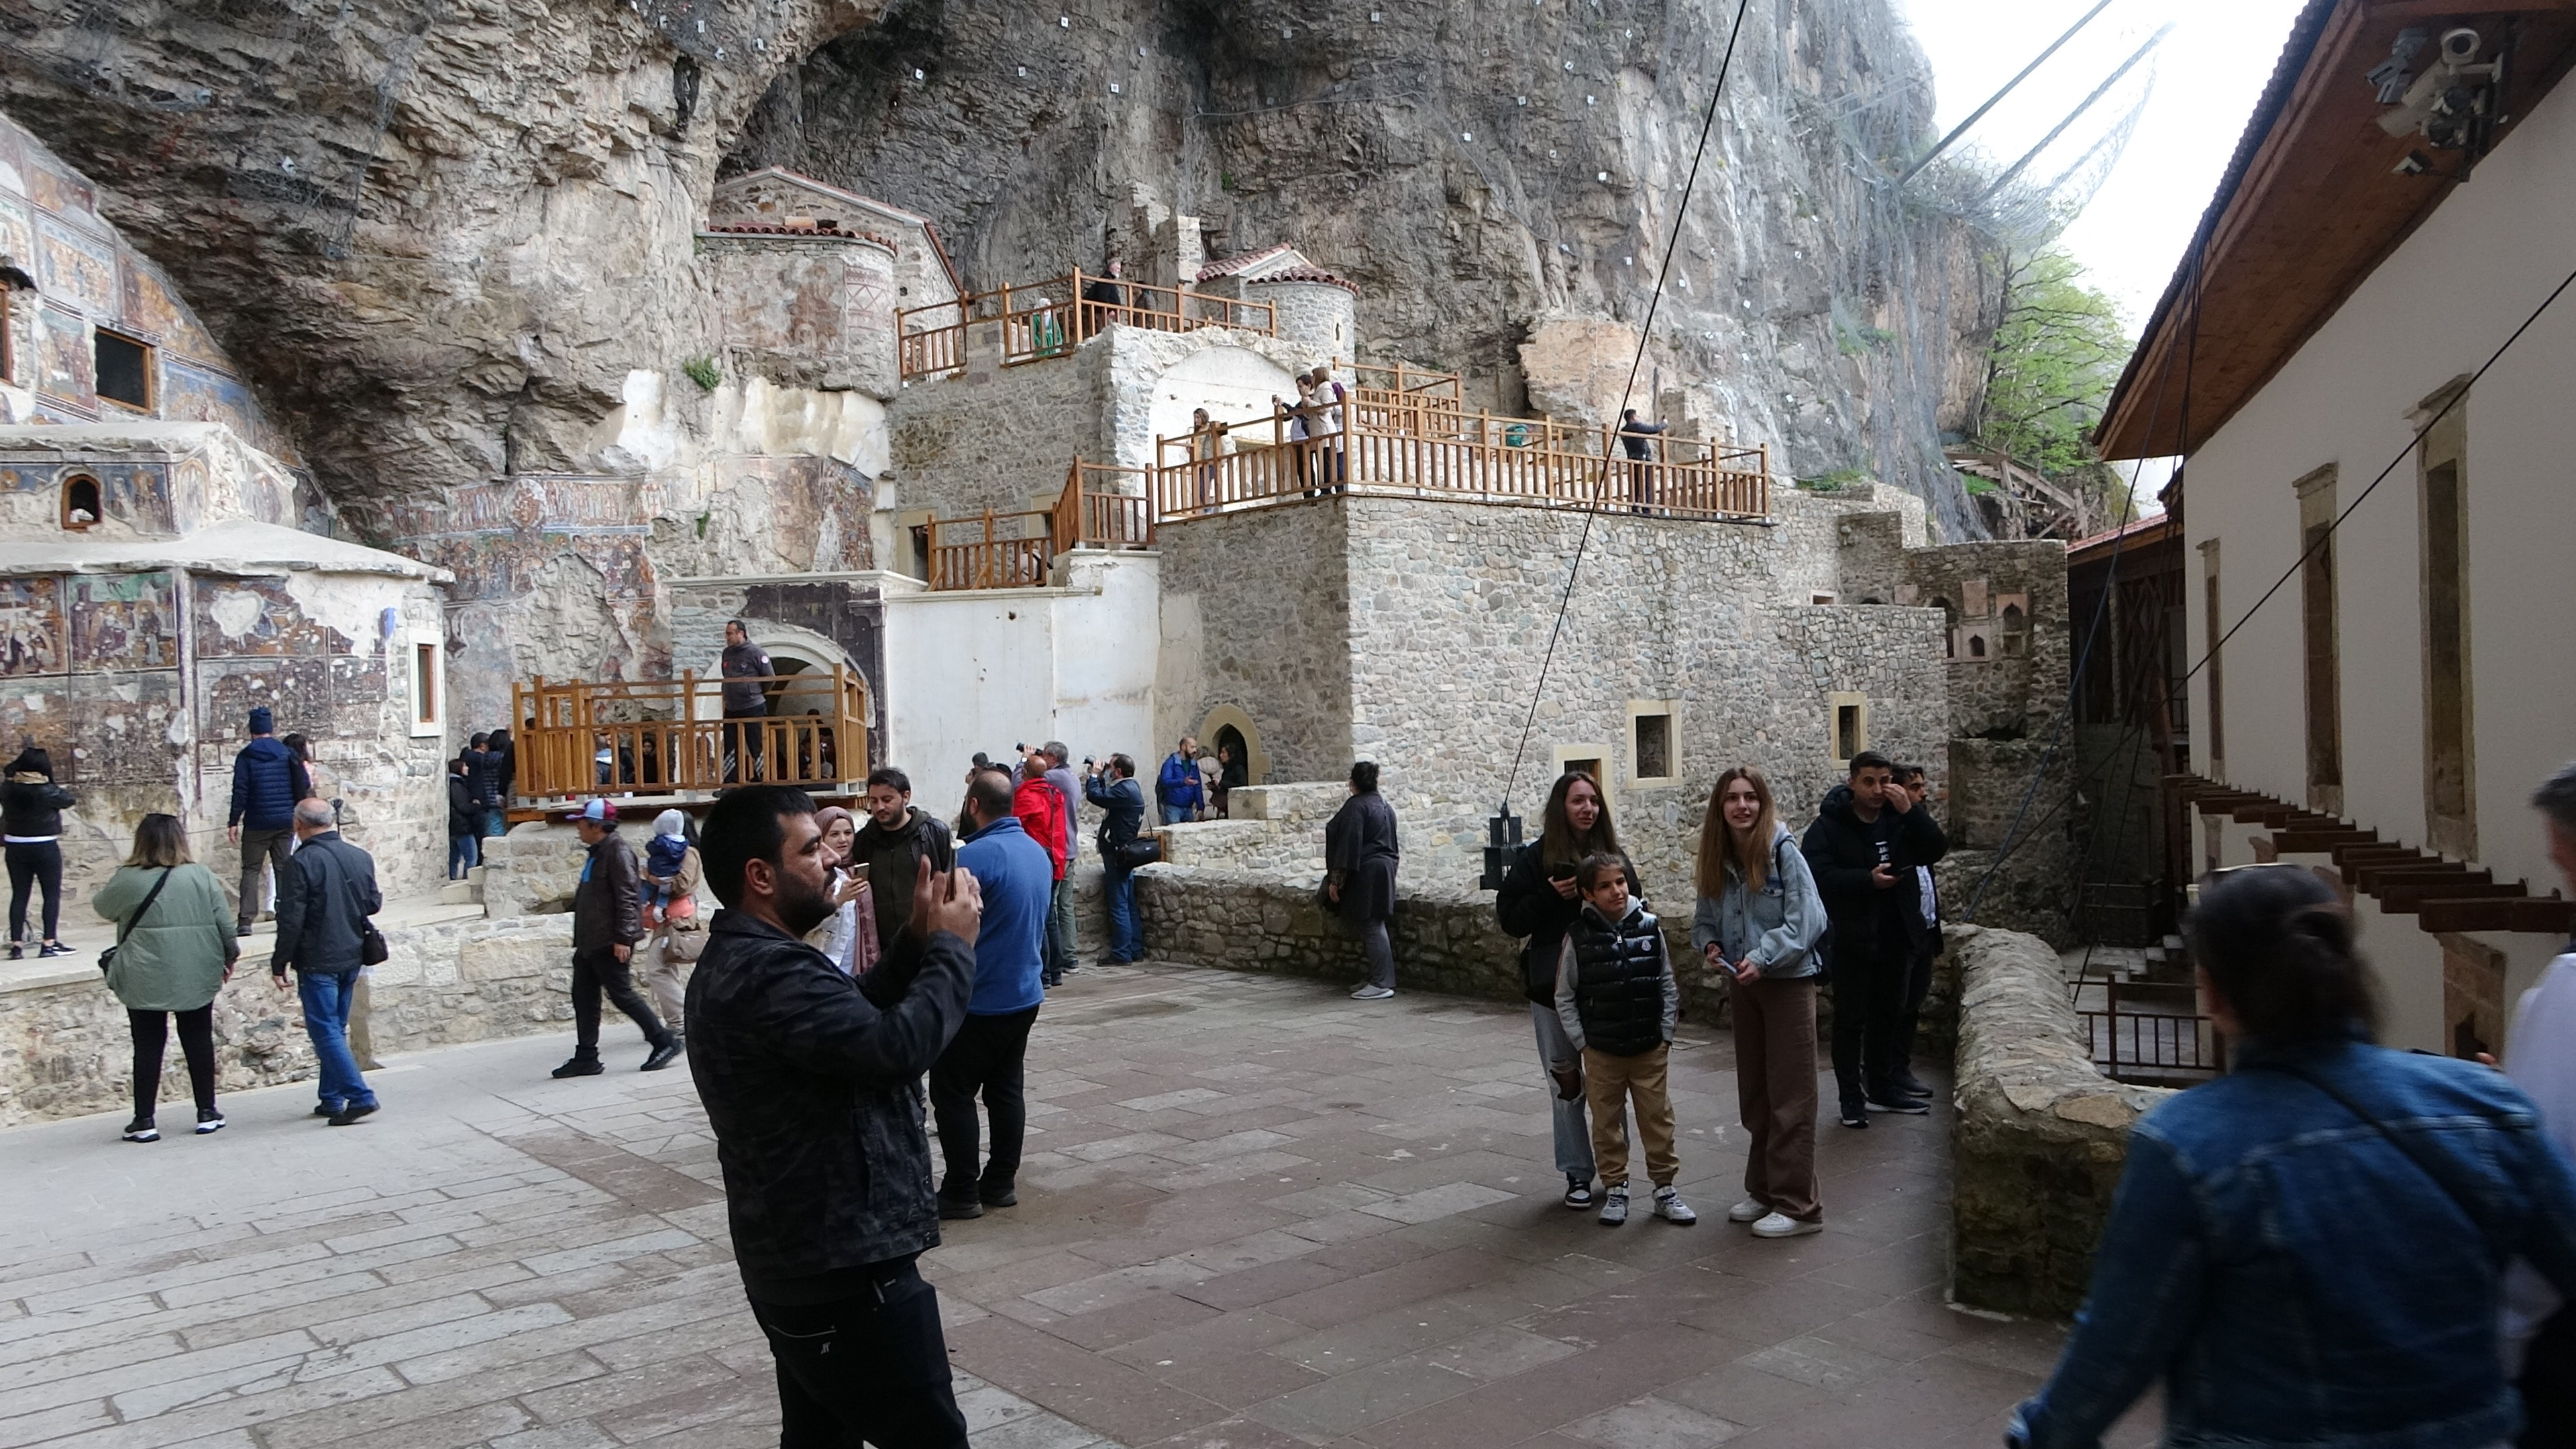 ürkiye’nin en önemli inanç turizmi merkezlerinden biri olan Trabzon’un Maçka ilçesi Altındere Vadisi’ndeki tarihi Sümela Manastırı’nda yaklaşık 6 yıl önce başlayan restorasyon ve kaya güçlendirme çalışmalarında yüzde 95’lik bölümü tamamlanarak geçtiğimiz Pazar günü ziyarete açıldı.